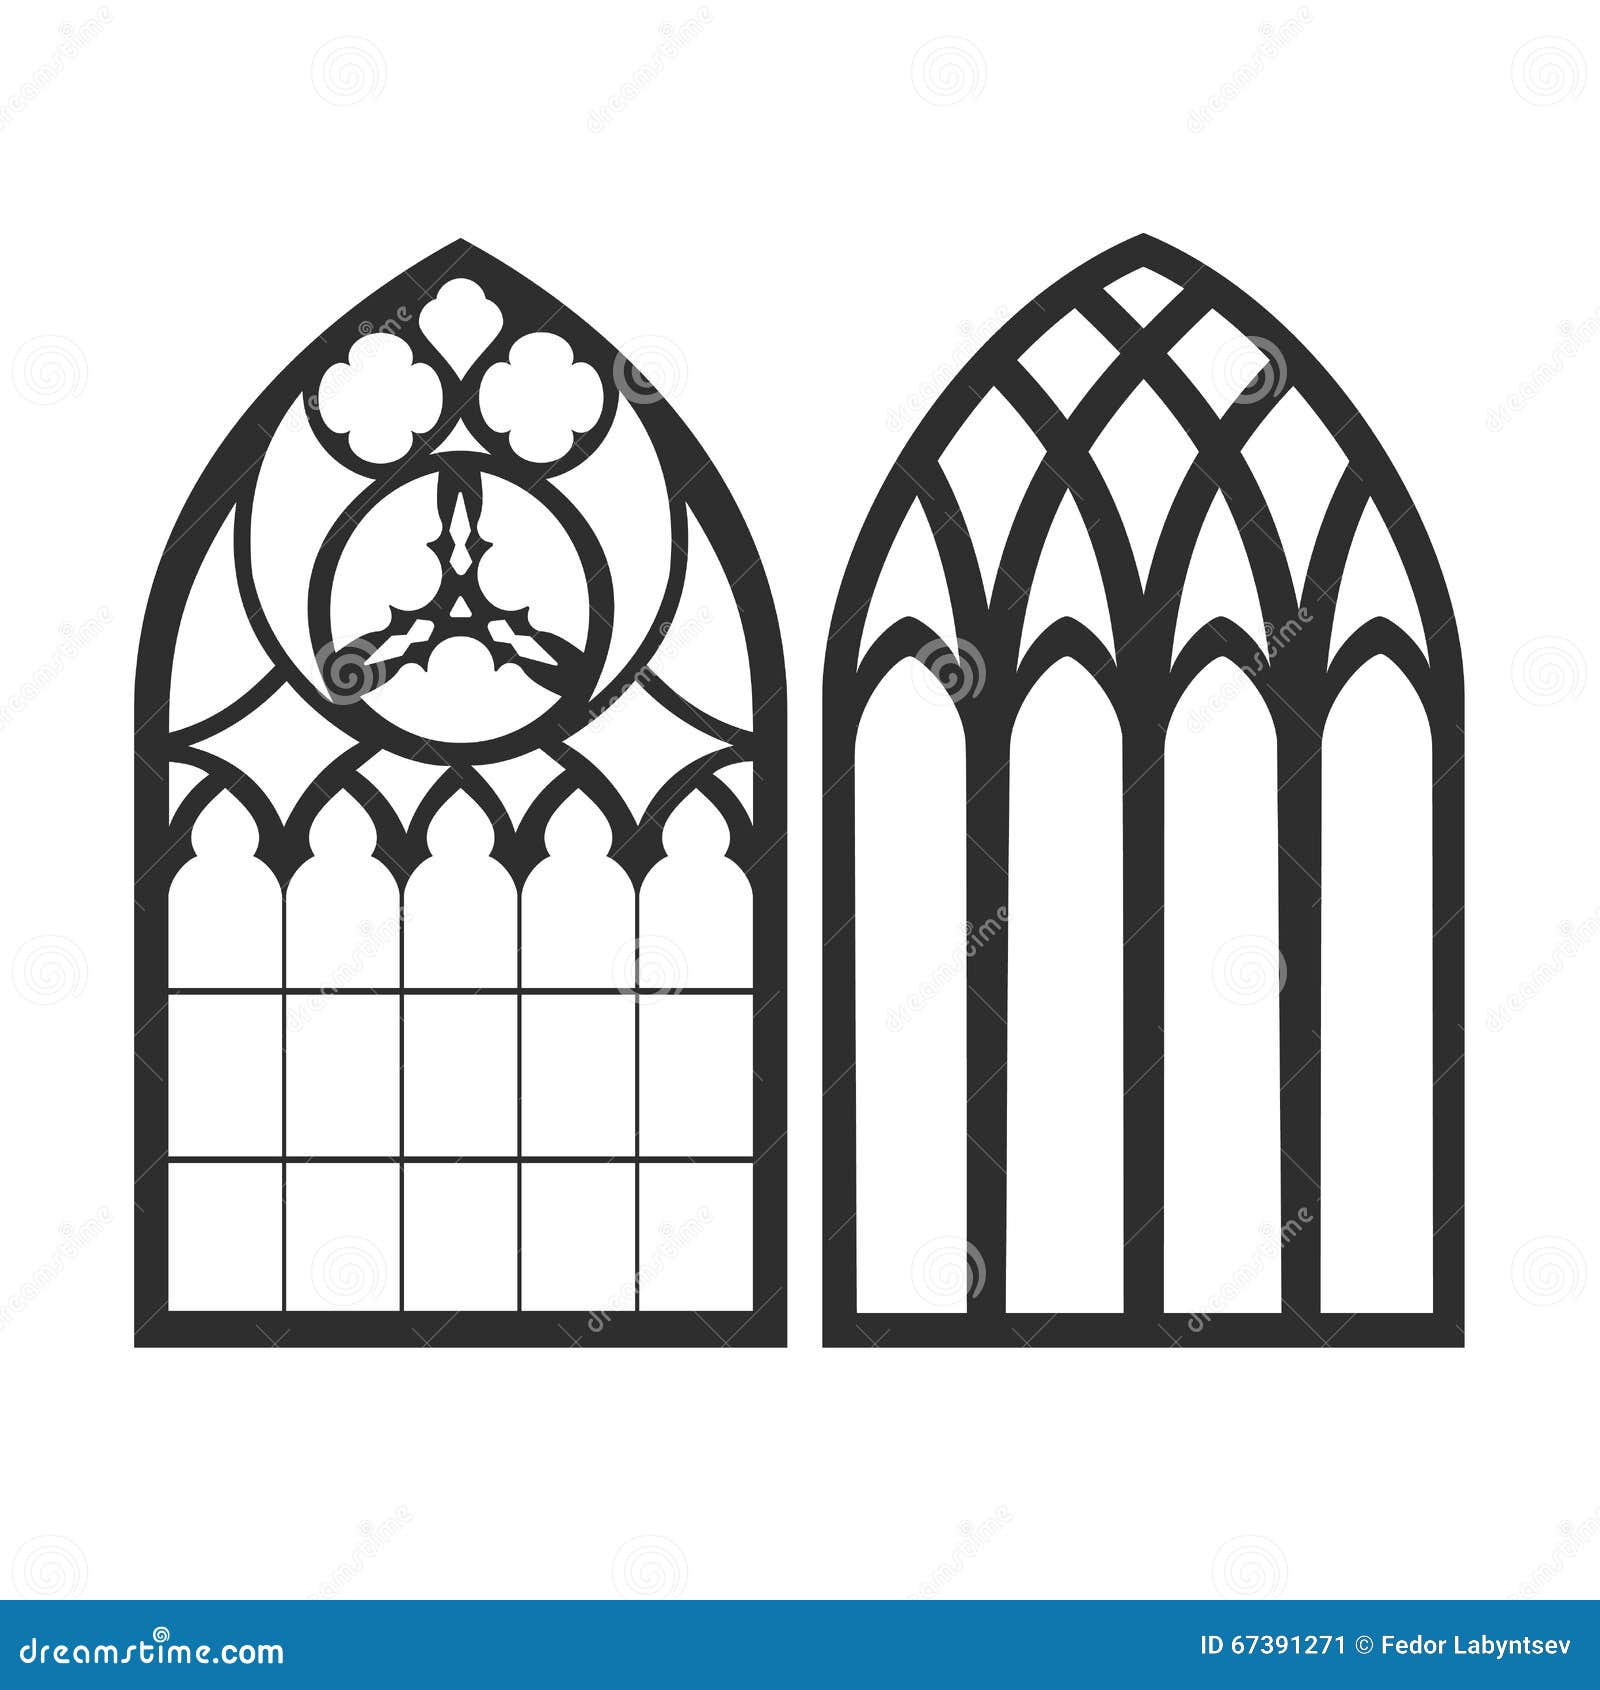 28mm 1:35 Kirchenfenster Gotisches Fenster gothic window wargames Dungeon